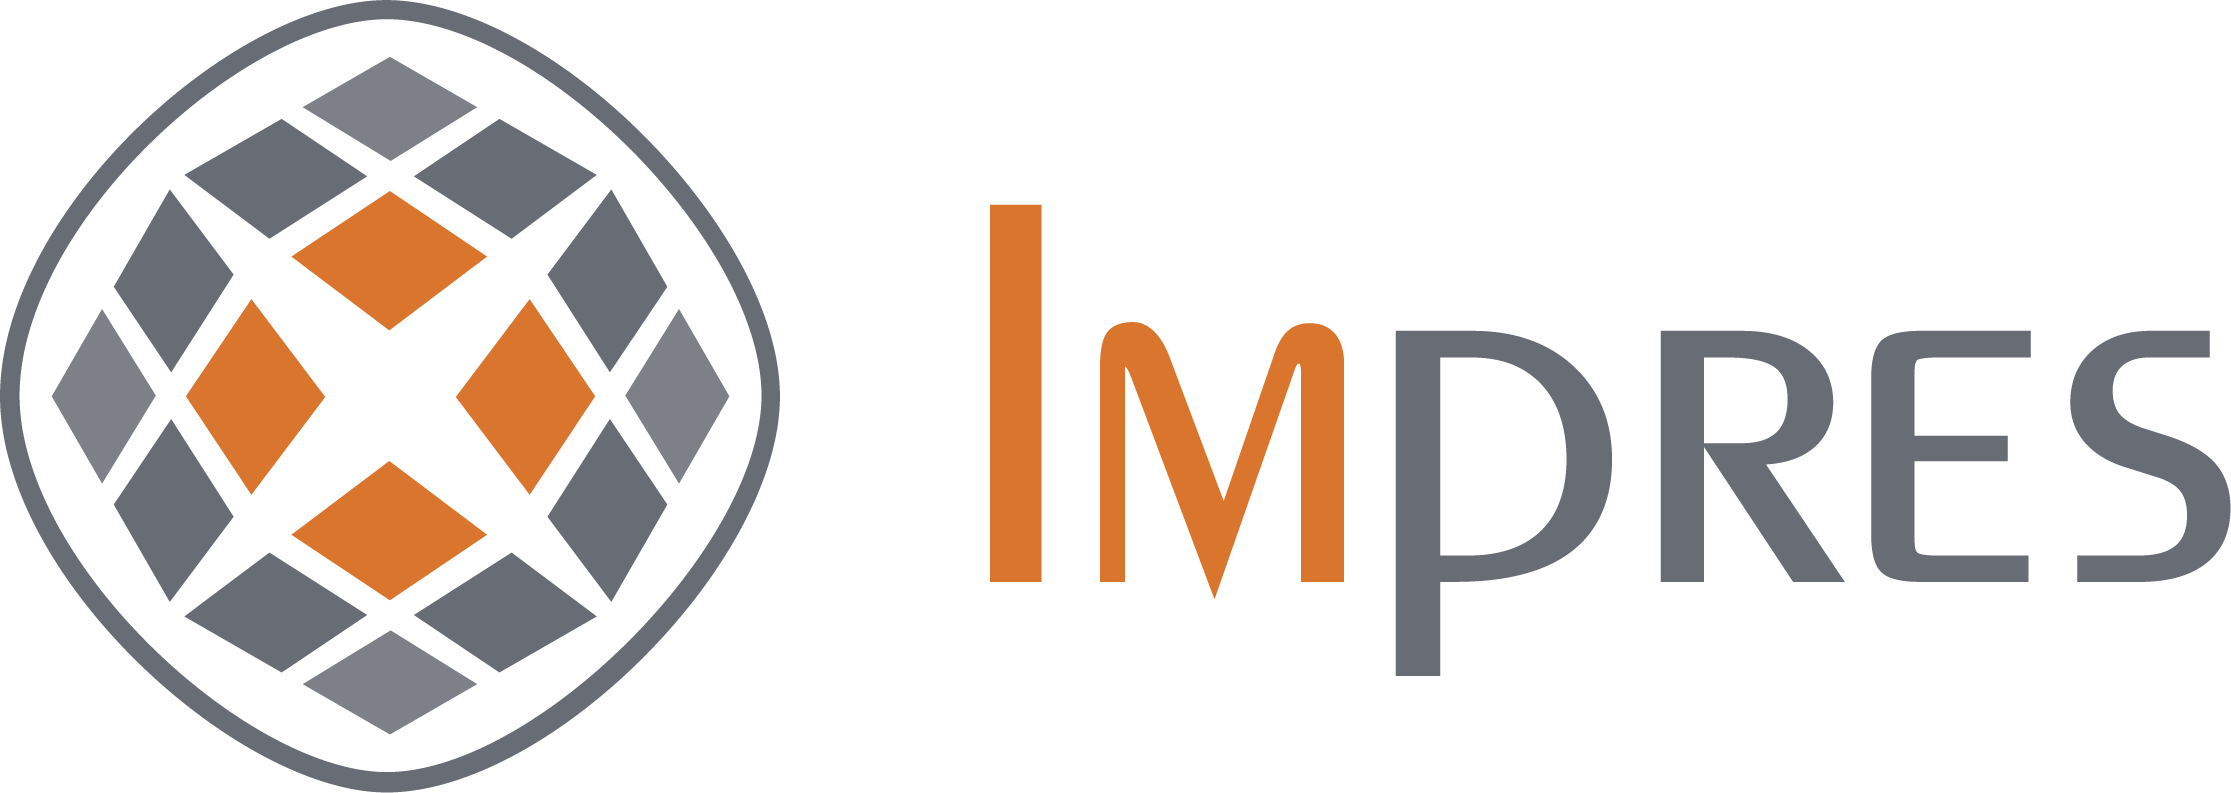 Impres Logo Name and Diamond